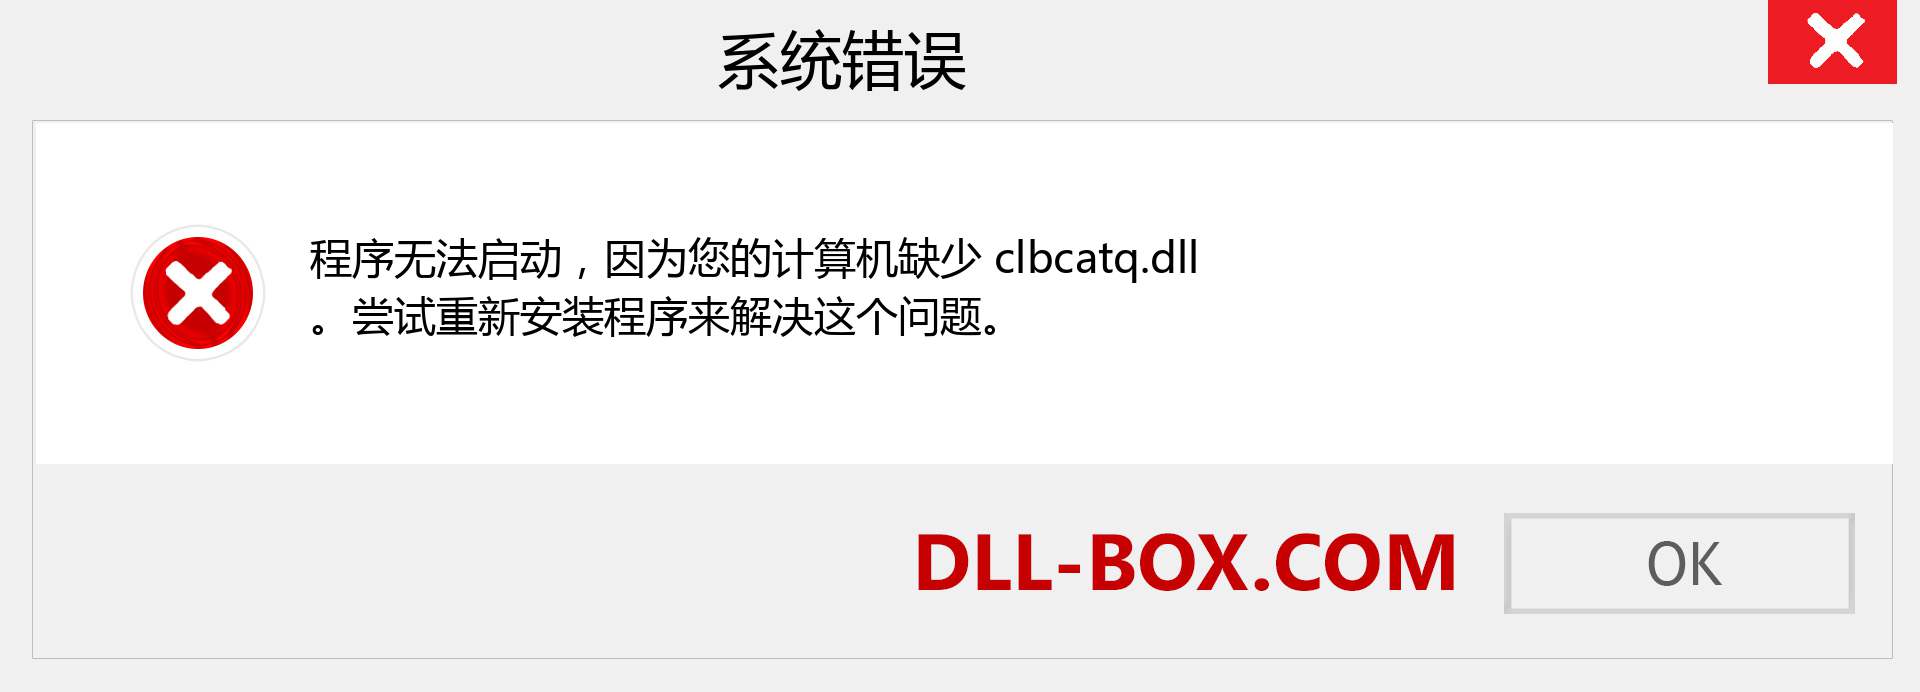 clbcatq.dll 文件丢失？。 适用于 Windows 7、8、10 的下载 - 修复 Windows、照片、图像上的 clbcatq dll 丢失错误